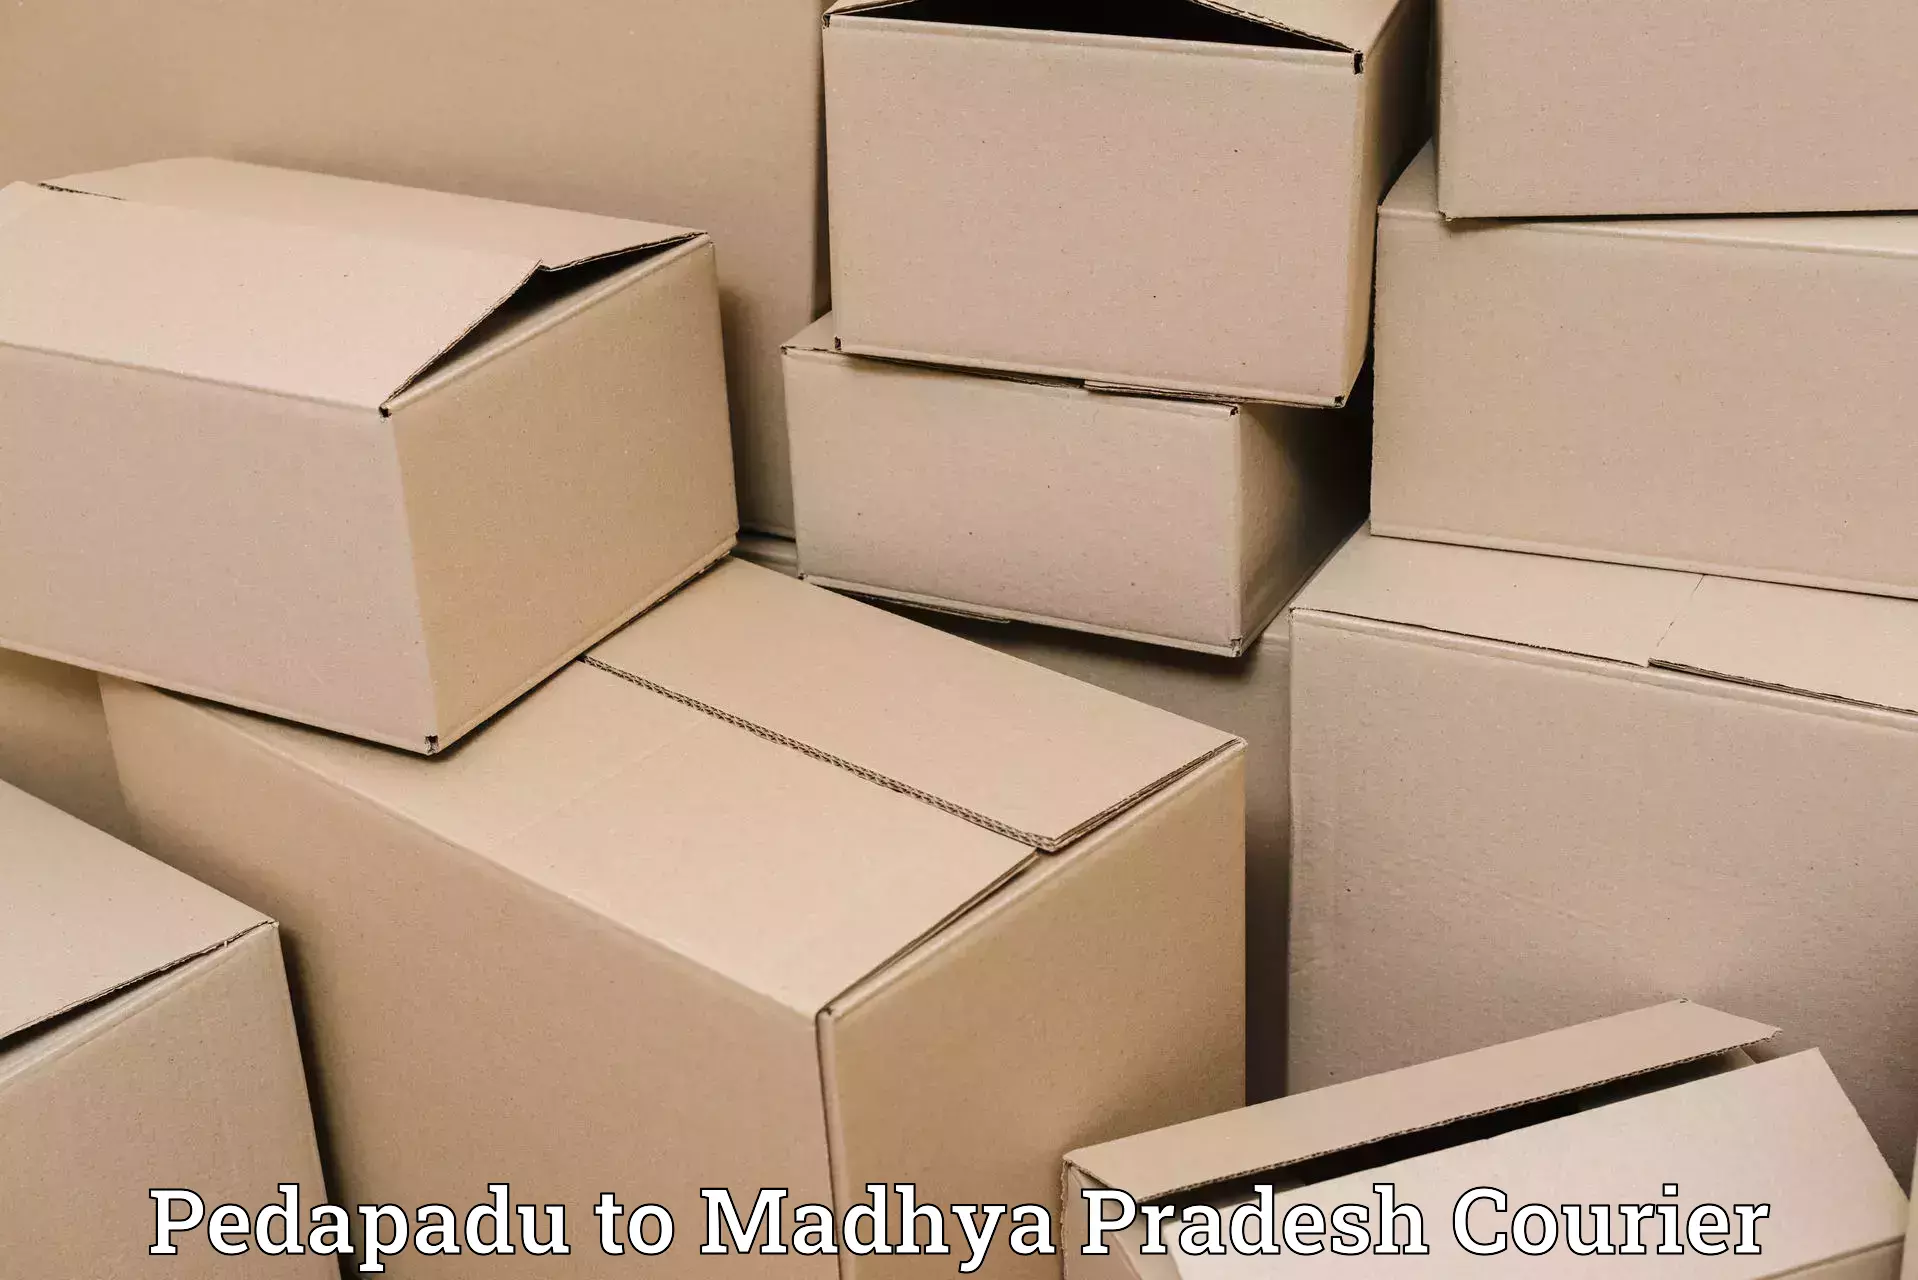 Easy access courier services Pedapadu to Niwari